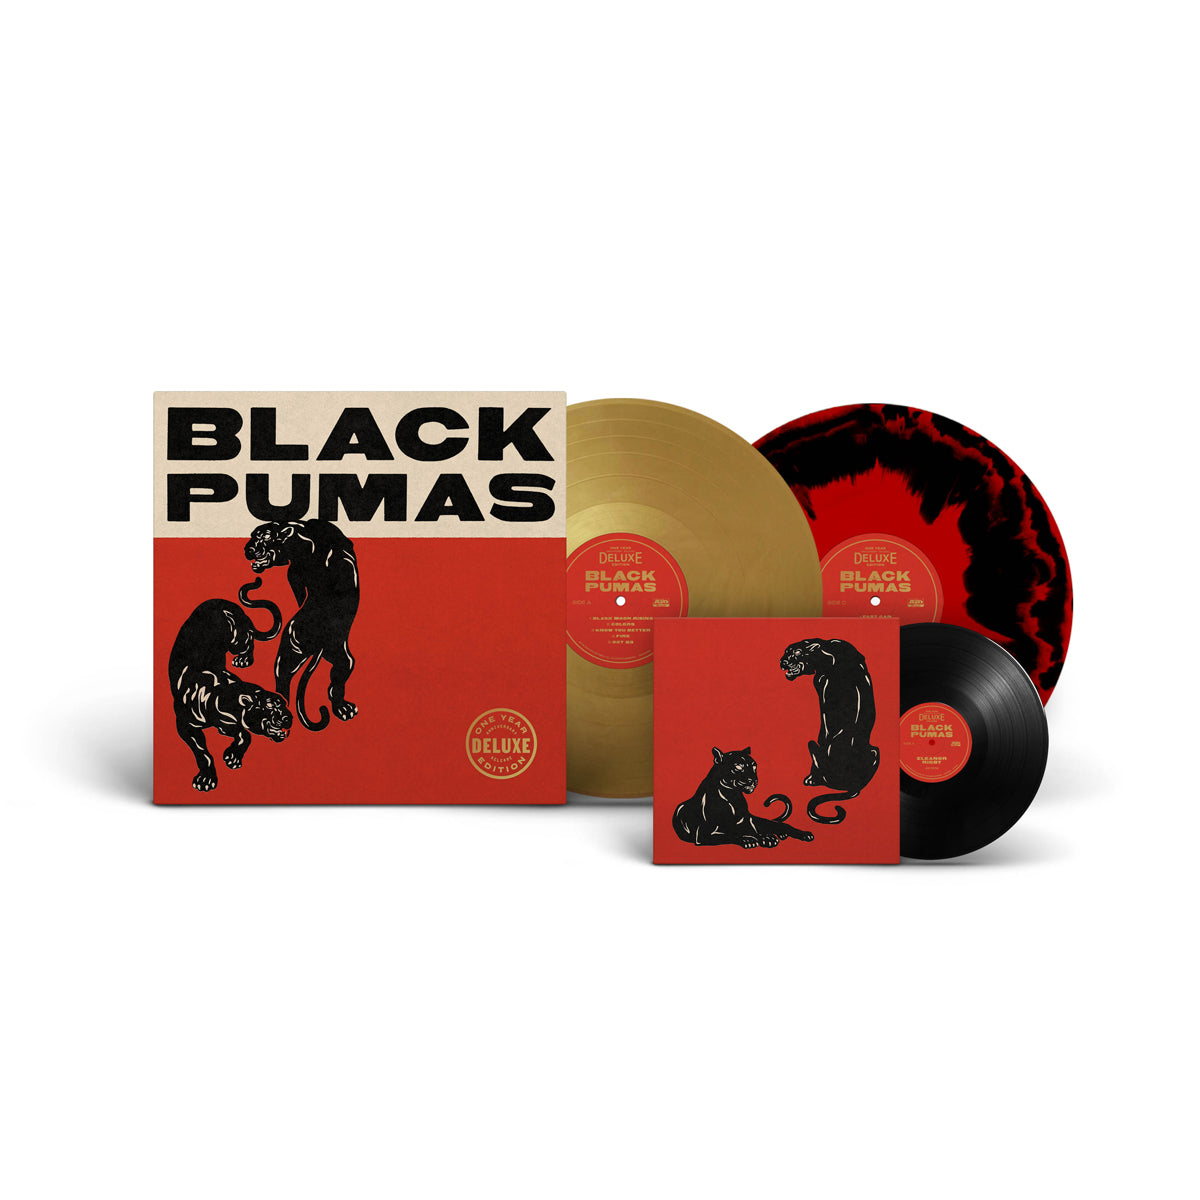 BLACK PUMAS – Black Pumas – 2LP+7” – Deluxe Edition Gold & Black/Red Vinyl